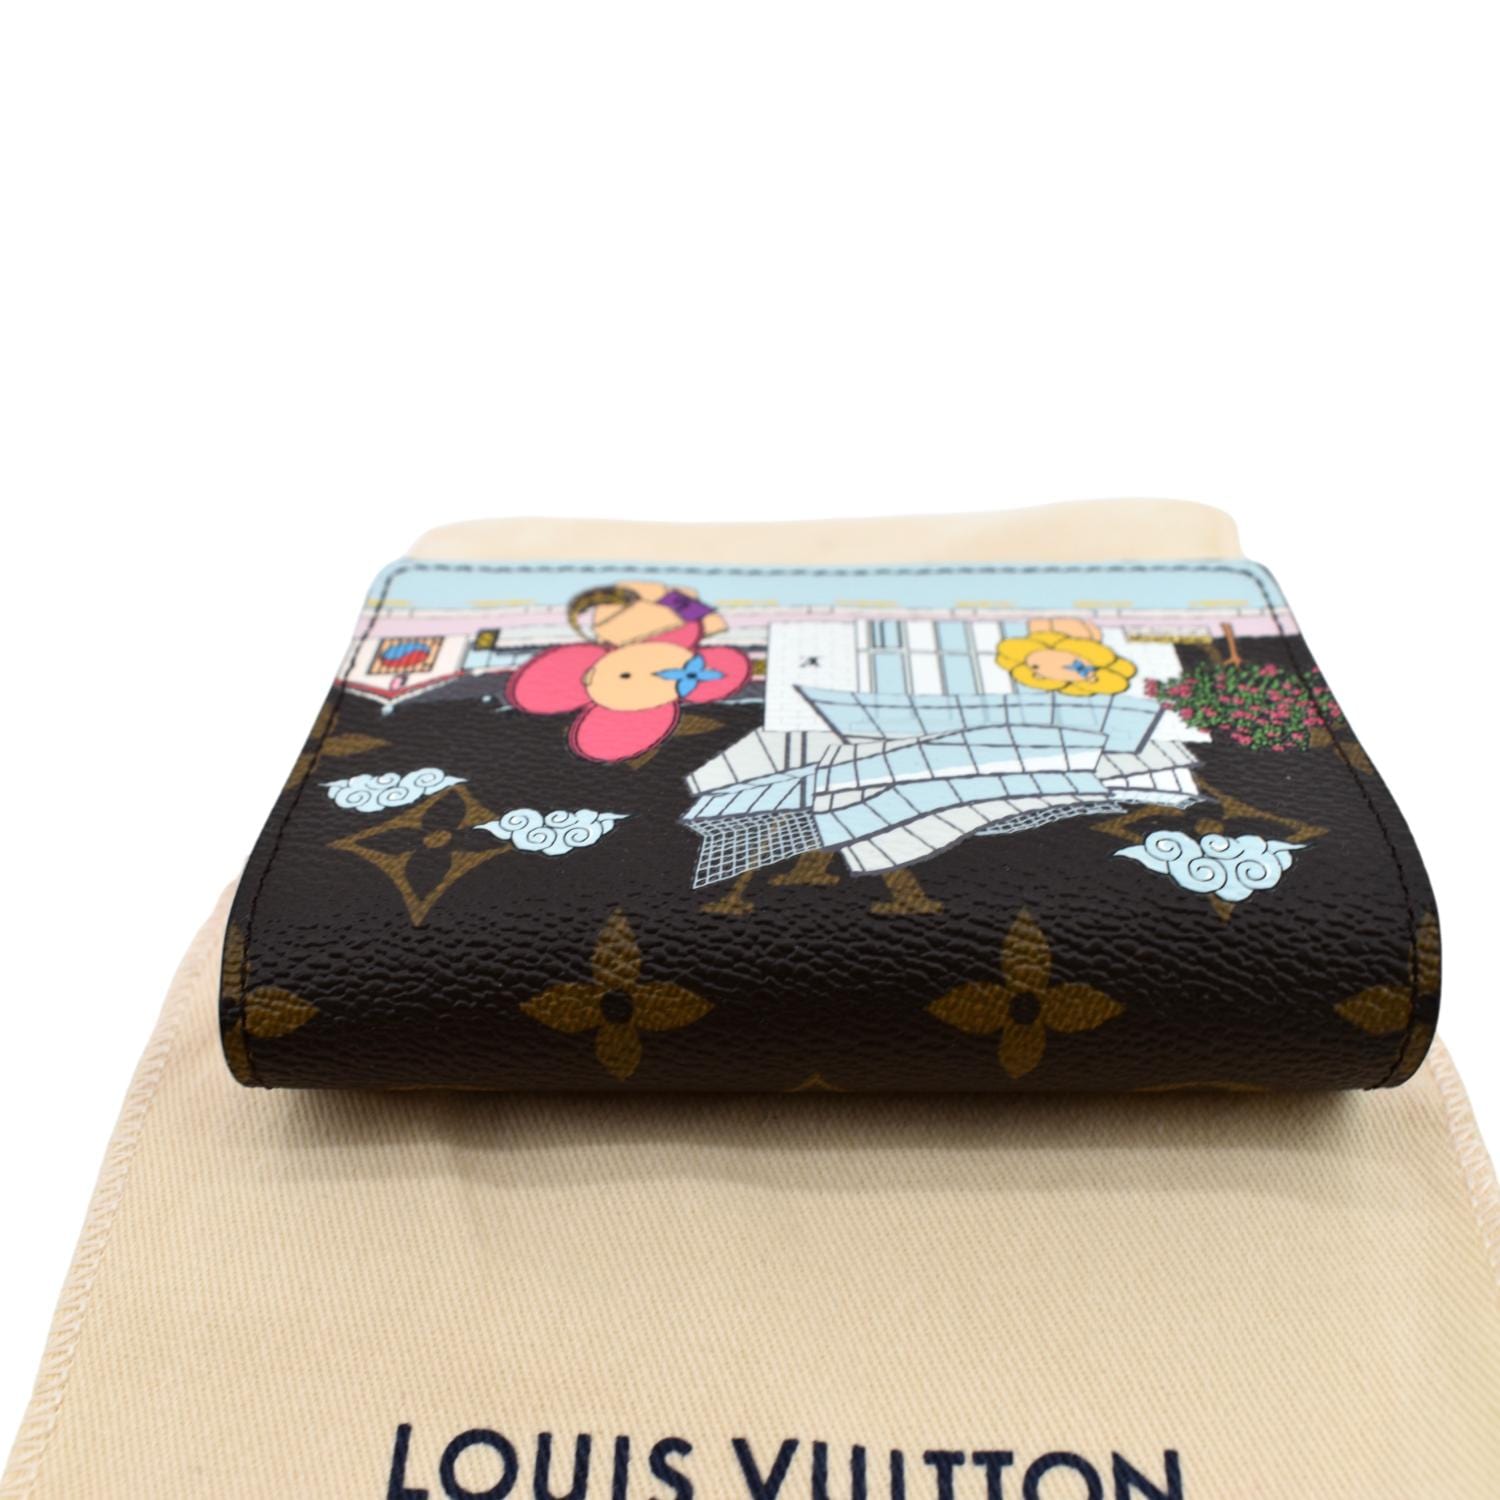 Louis Vuitton Disney Worldstarhiphop  semashowcom